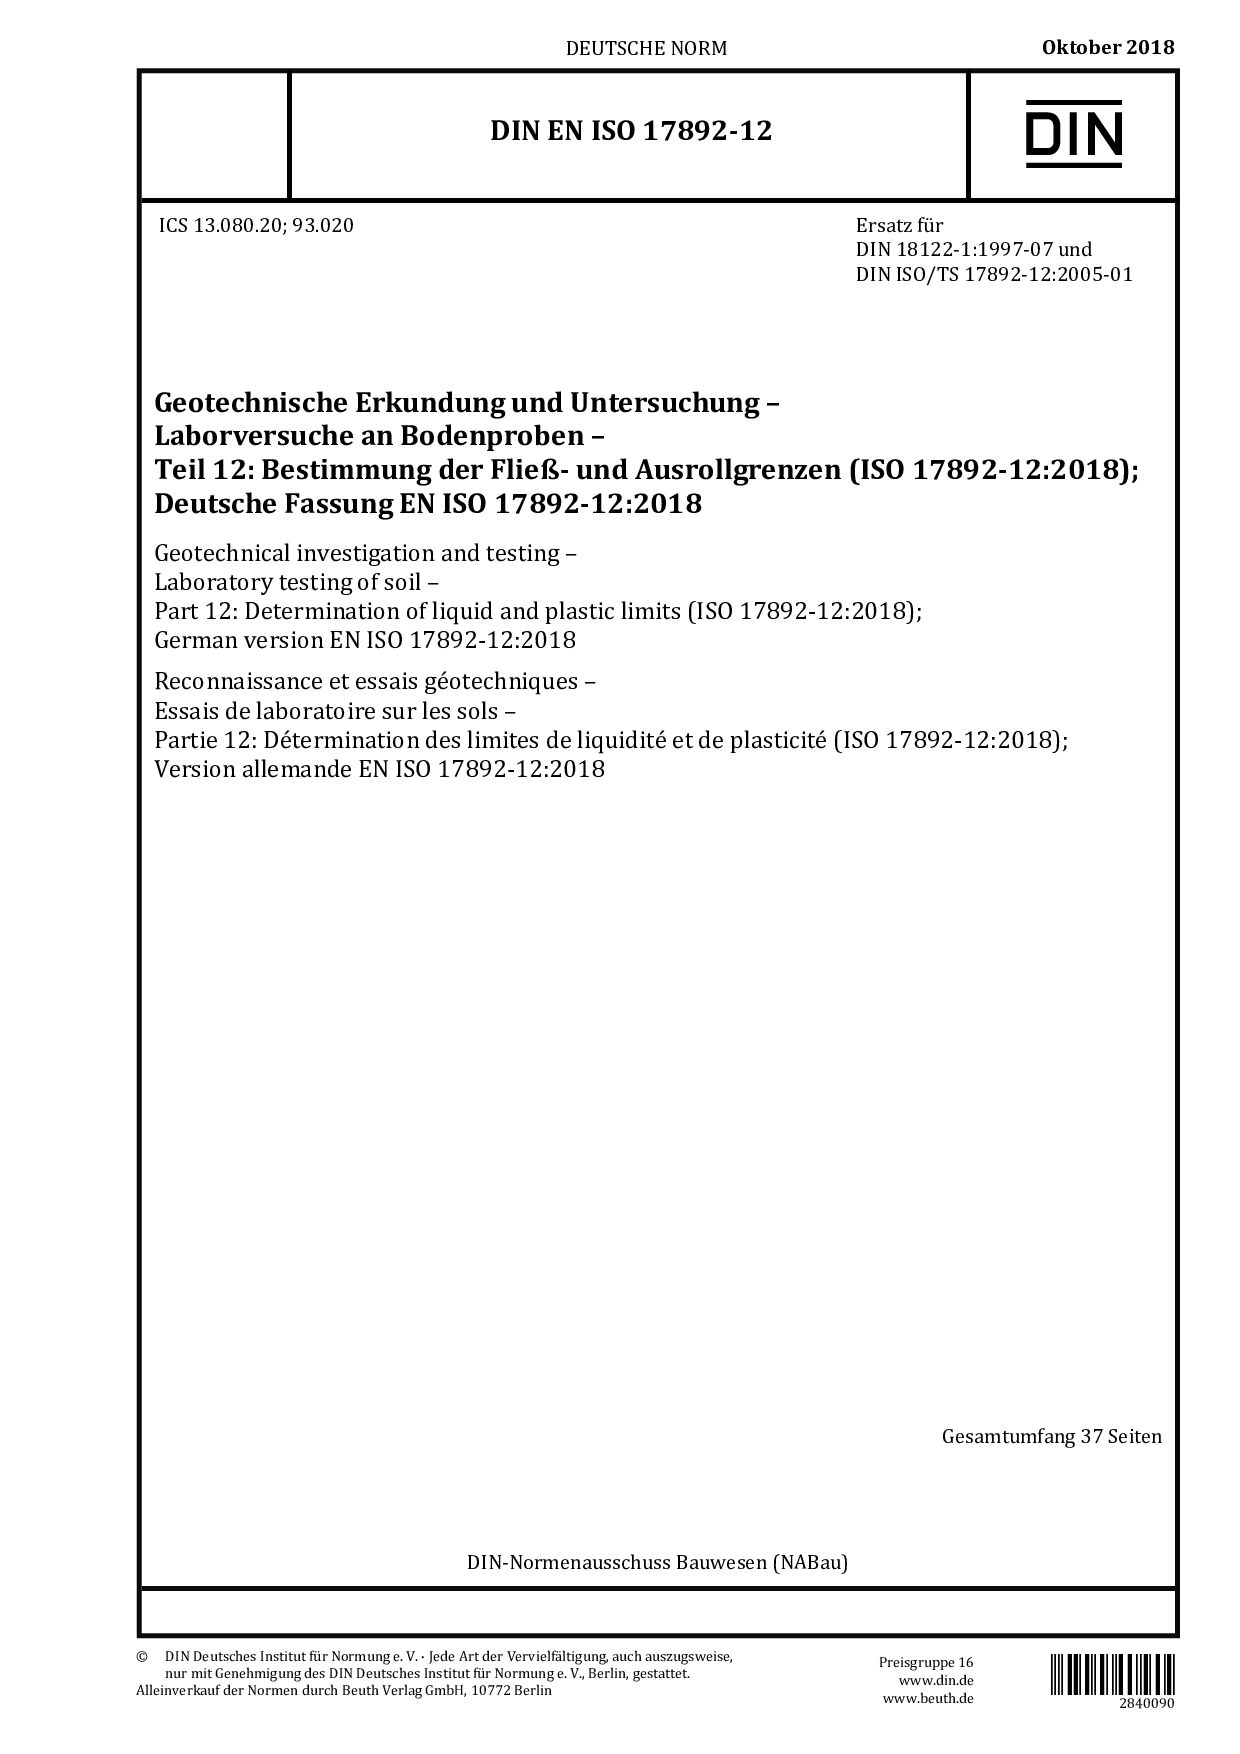 DIN EN ISO 17892-12:2018封面图